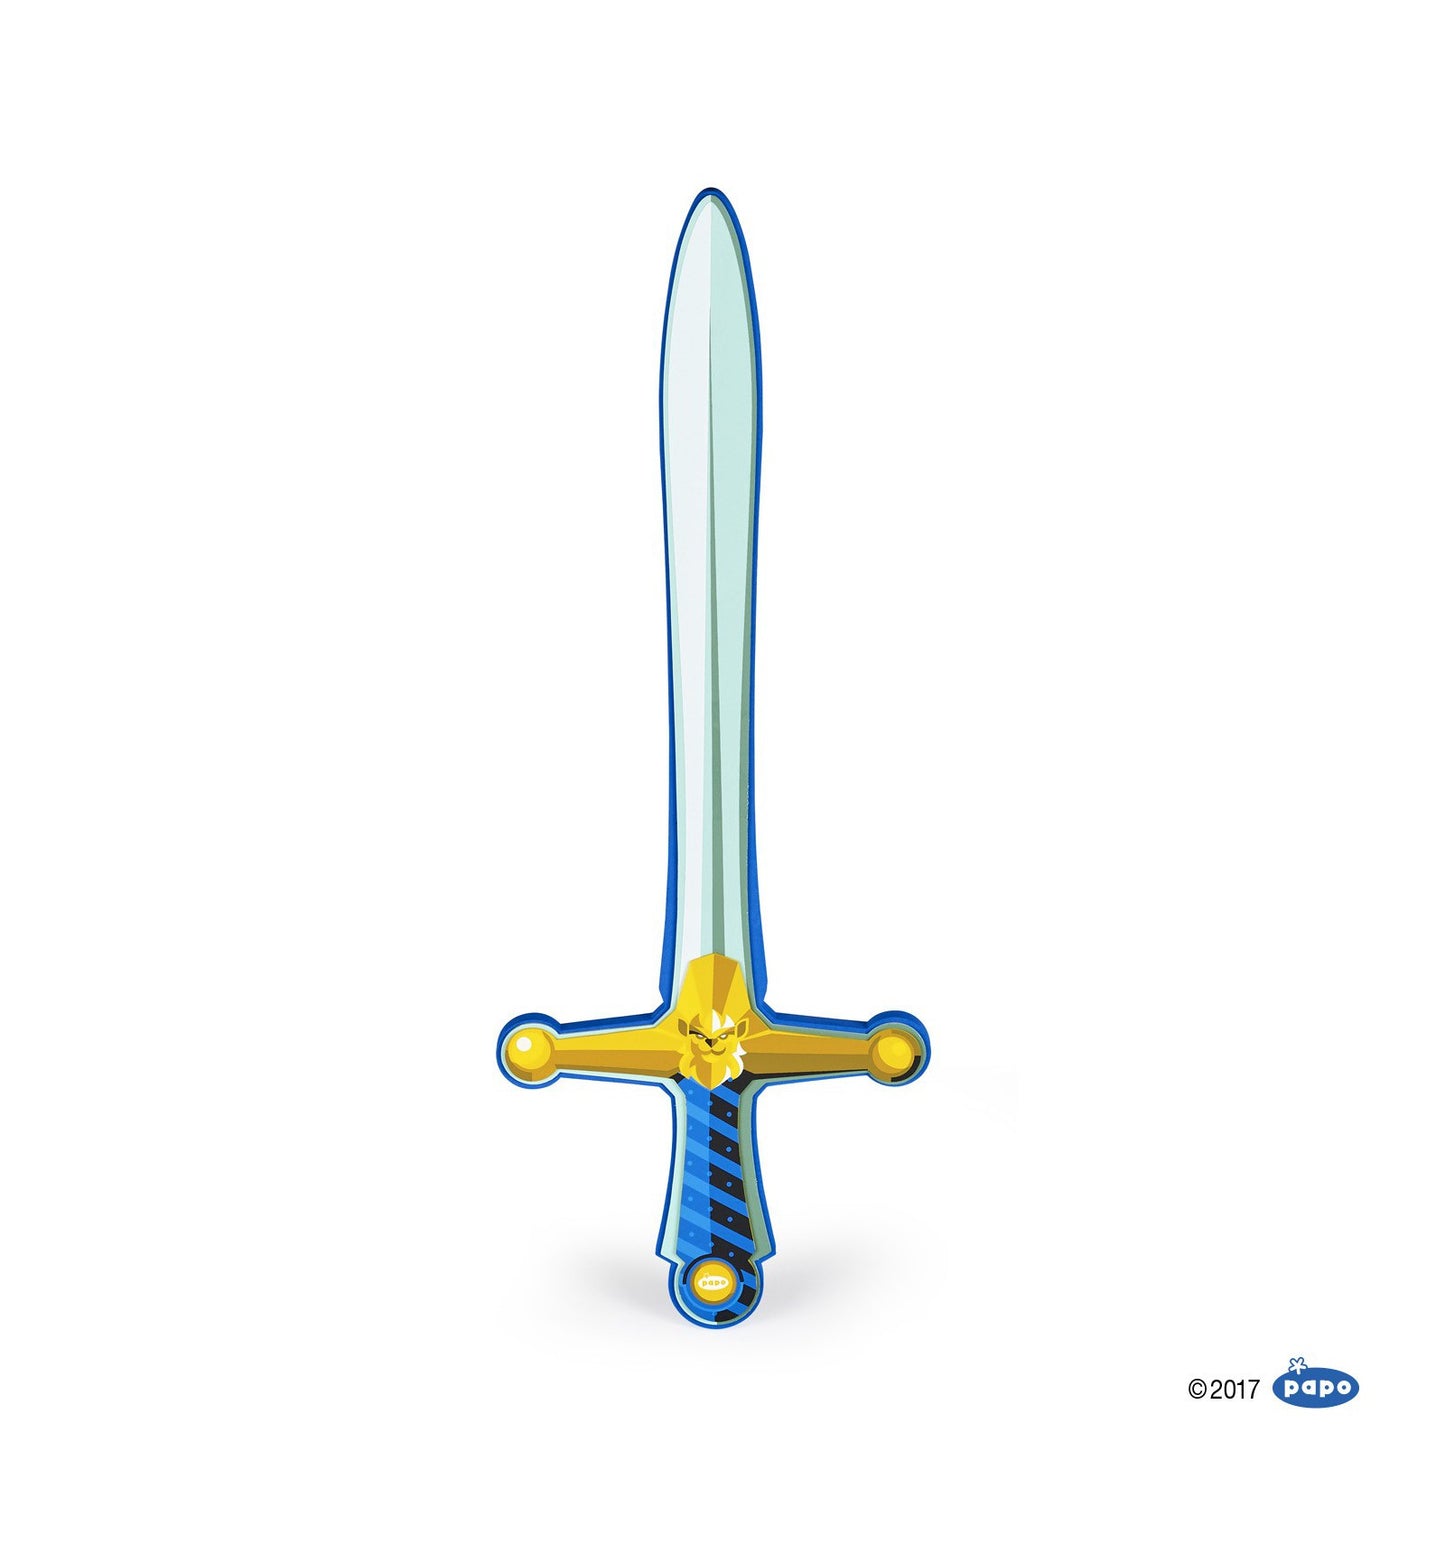 Lion knight foam sword